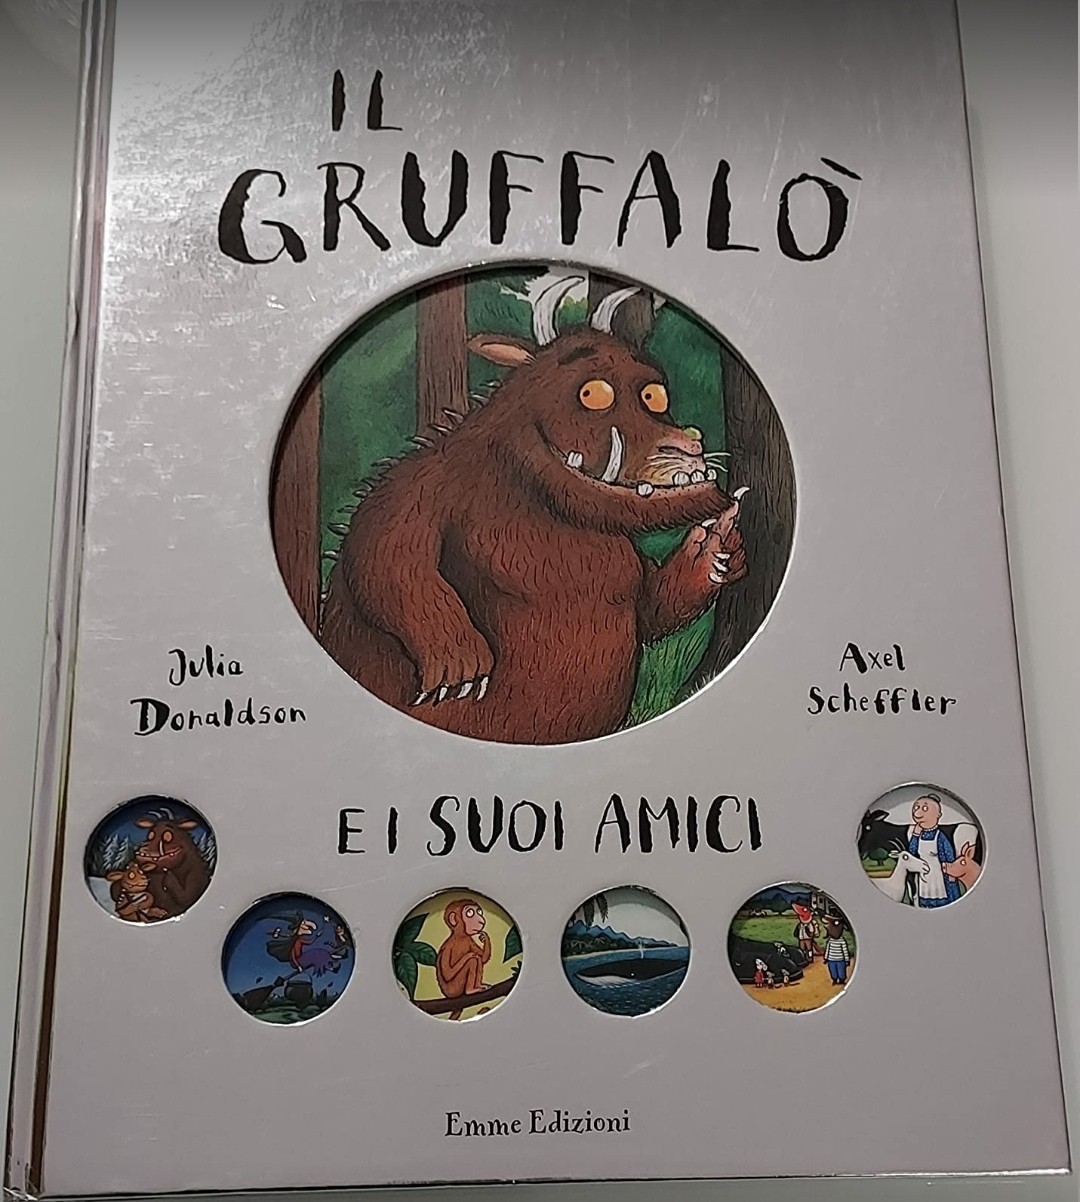 Il Gruffalò - Una storia da leggere e giocare - Donaldson/Scheffler